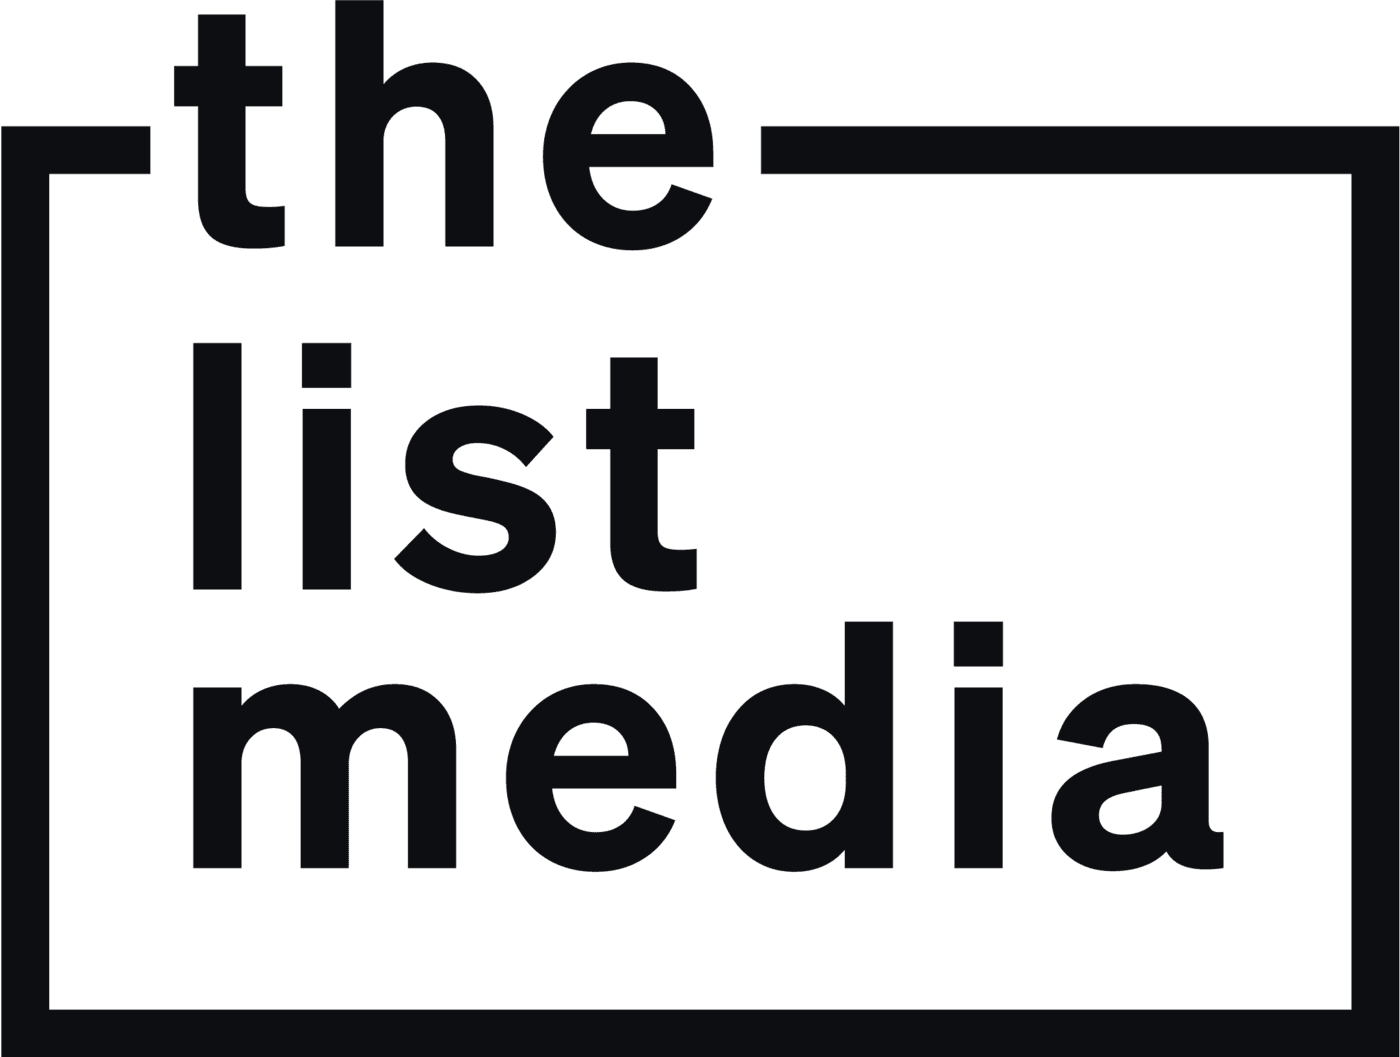 The List Media